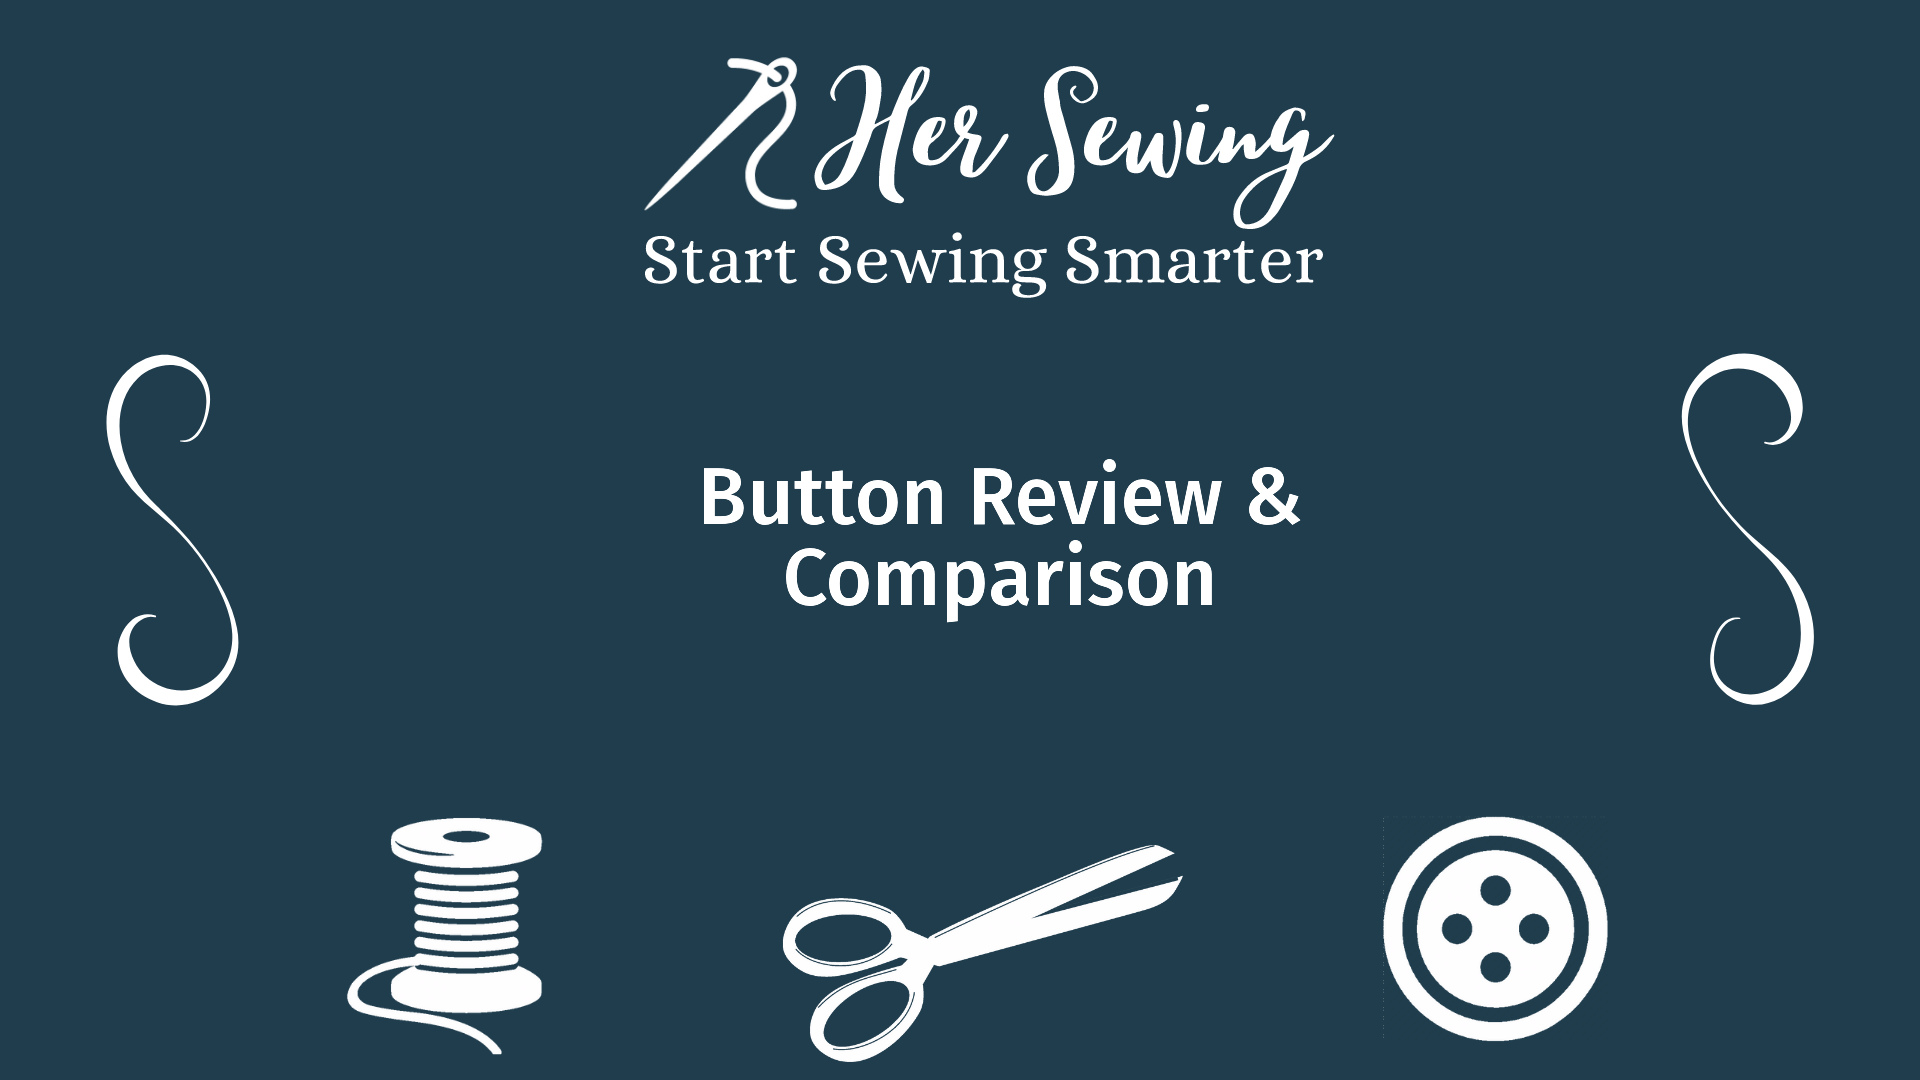 Button Review & Comparison